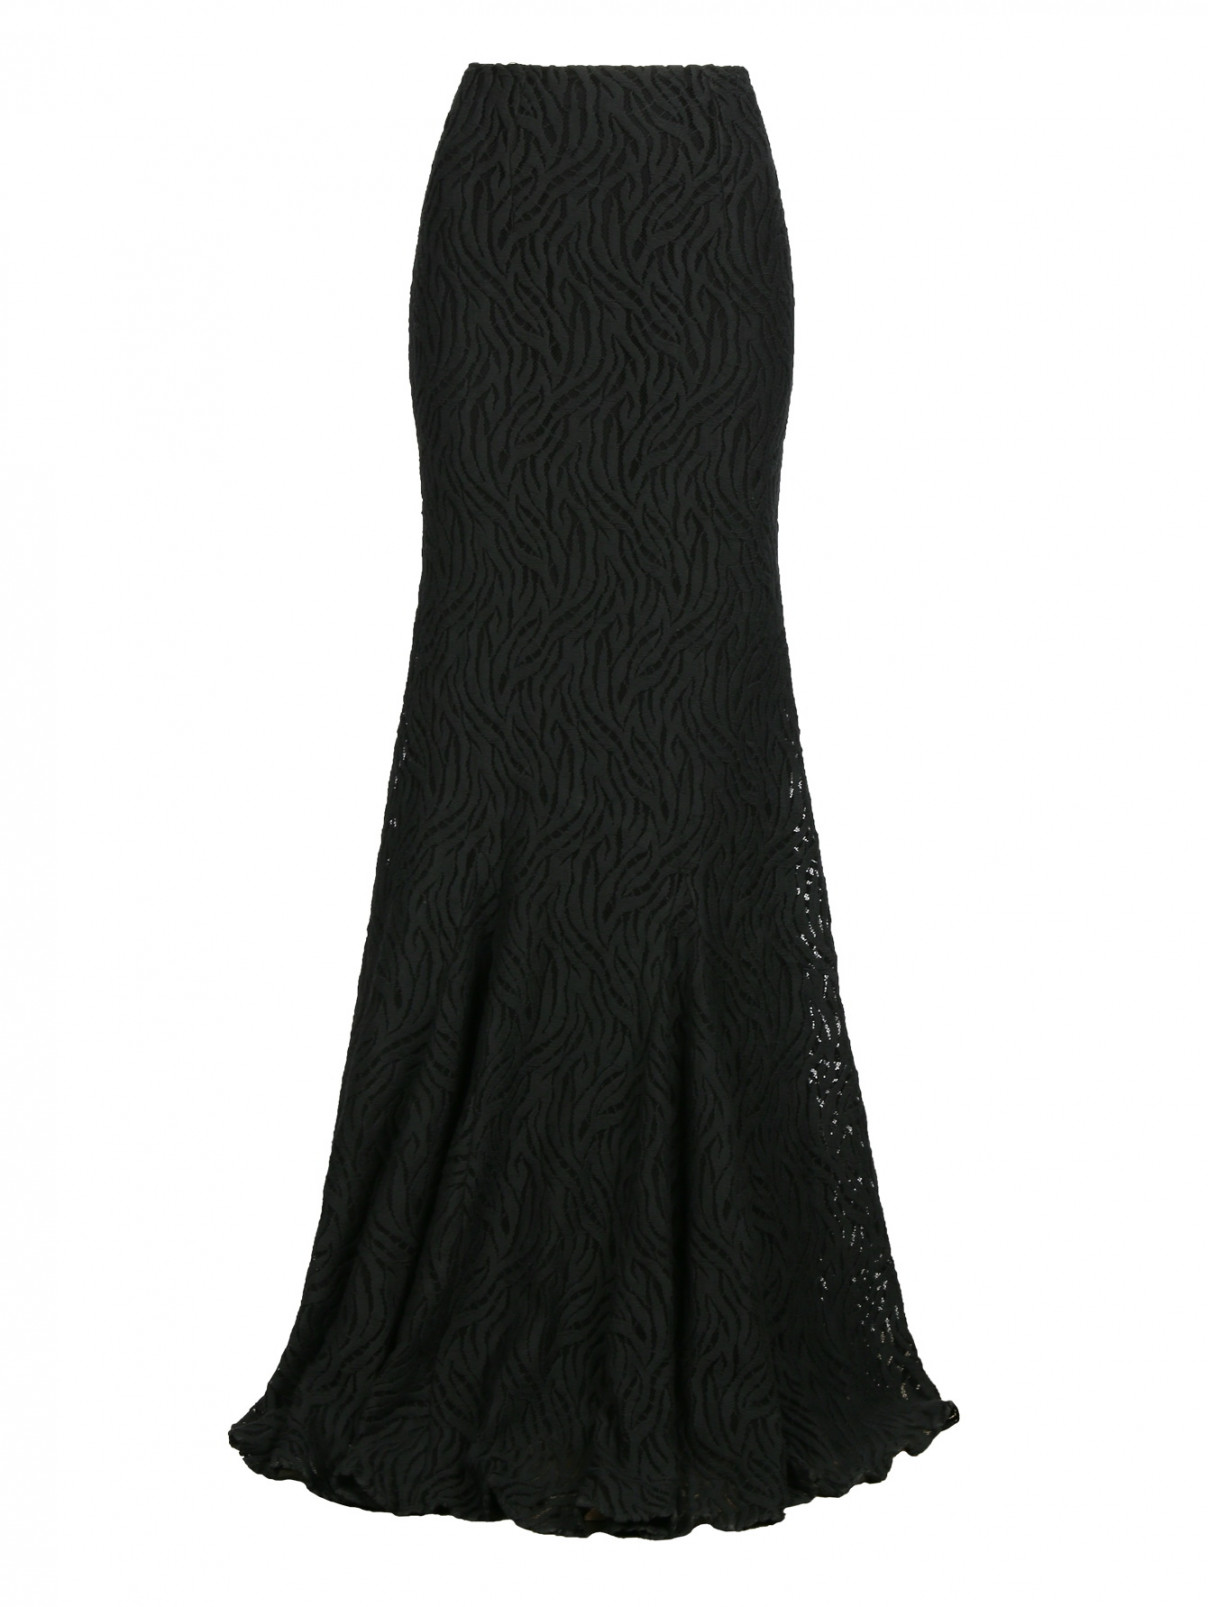 Кружевная юбка-макси Versace 1969  –  Общий вид  – Цвет:  Черный